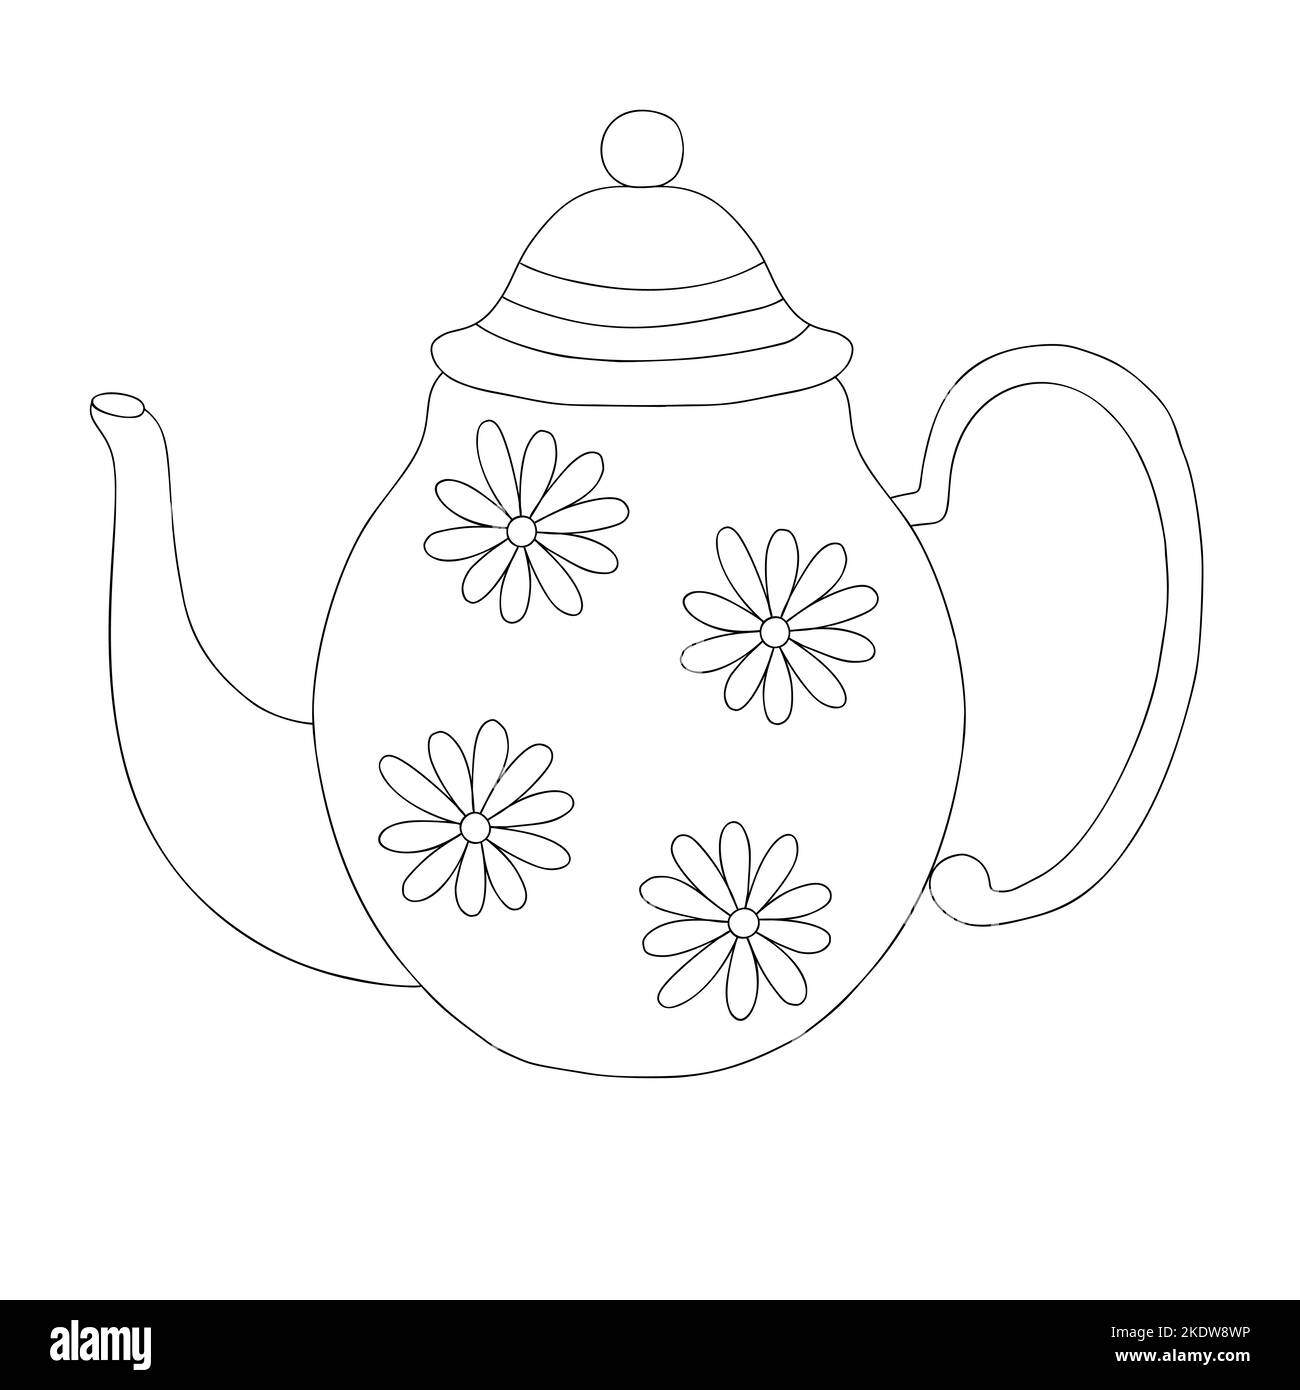 Teekannen mit Blumen verziert einfache Doodle skizzieren Vektor-Illustration, Küche Utensil für die Herstellung von heißen Getränken Tee, Kaffee, handgezeichnete Design-Element Stock Vektor